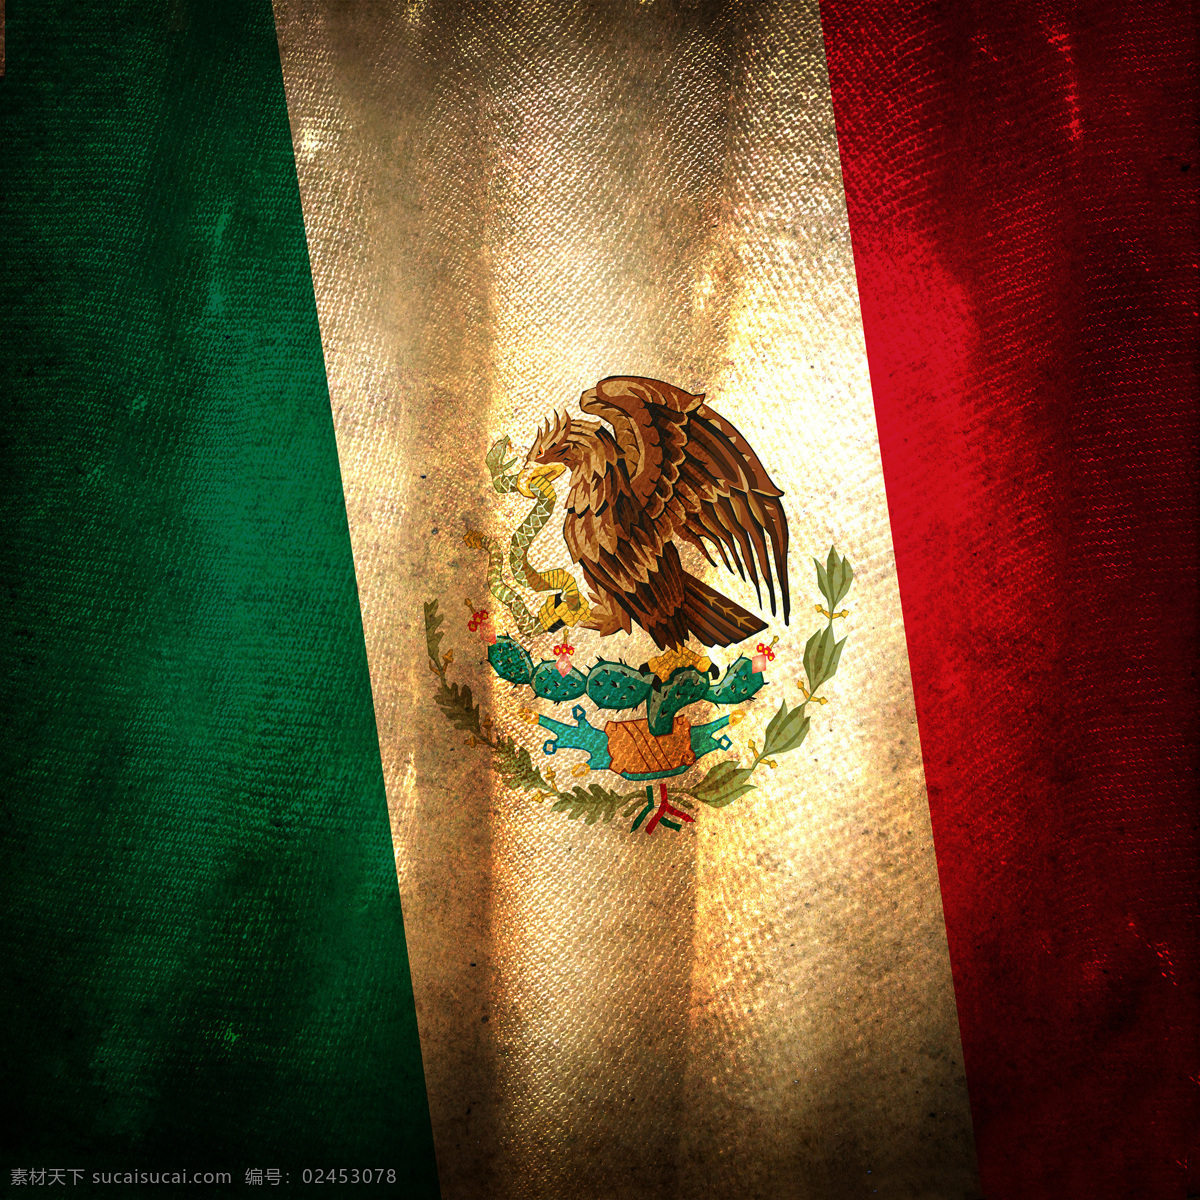 墨西哥 国旗 标志 国徽 国旗图片 生活百科